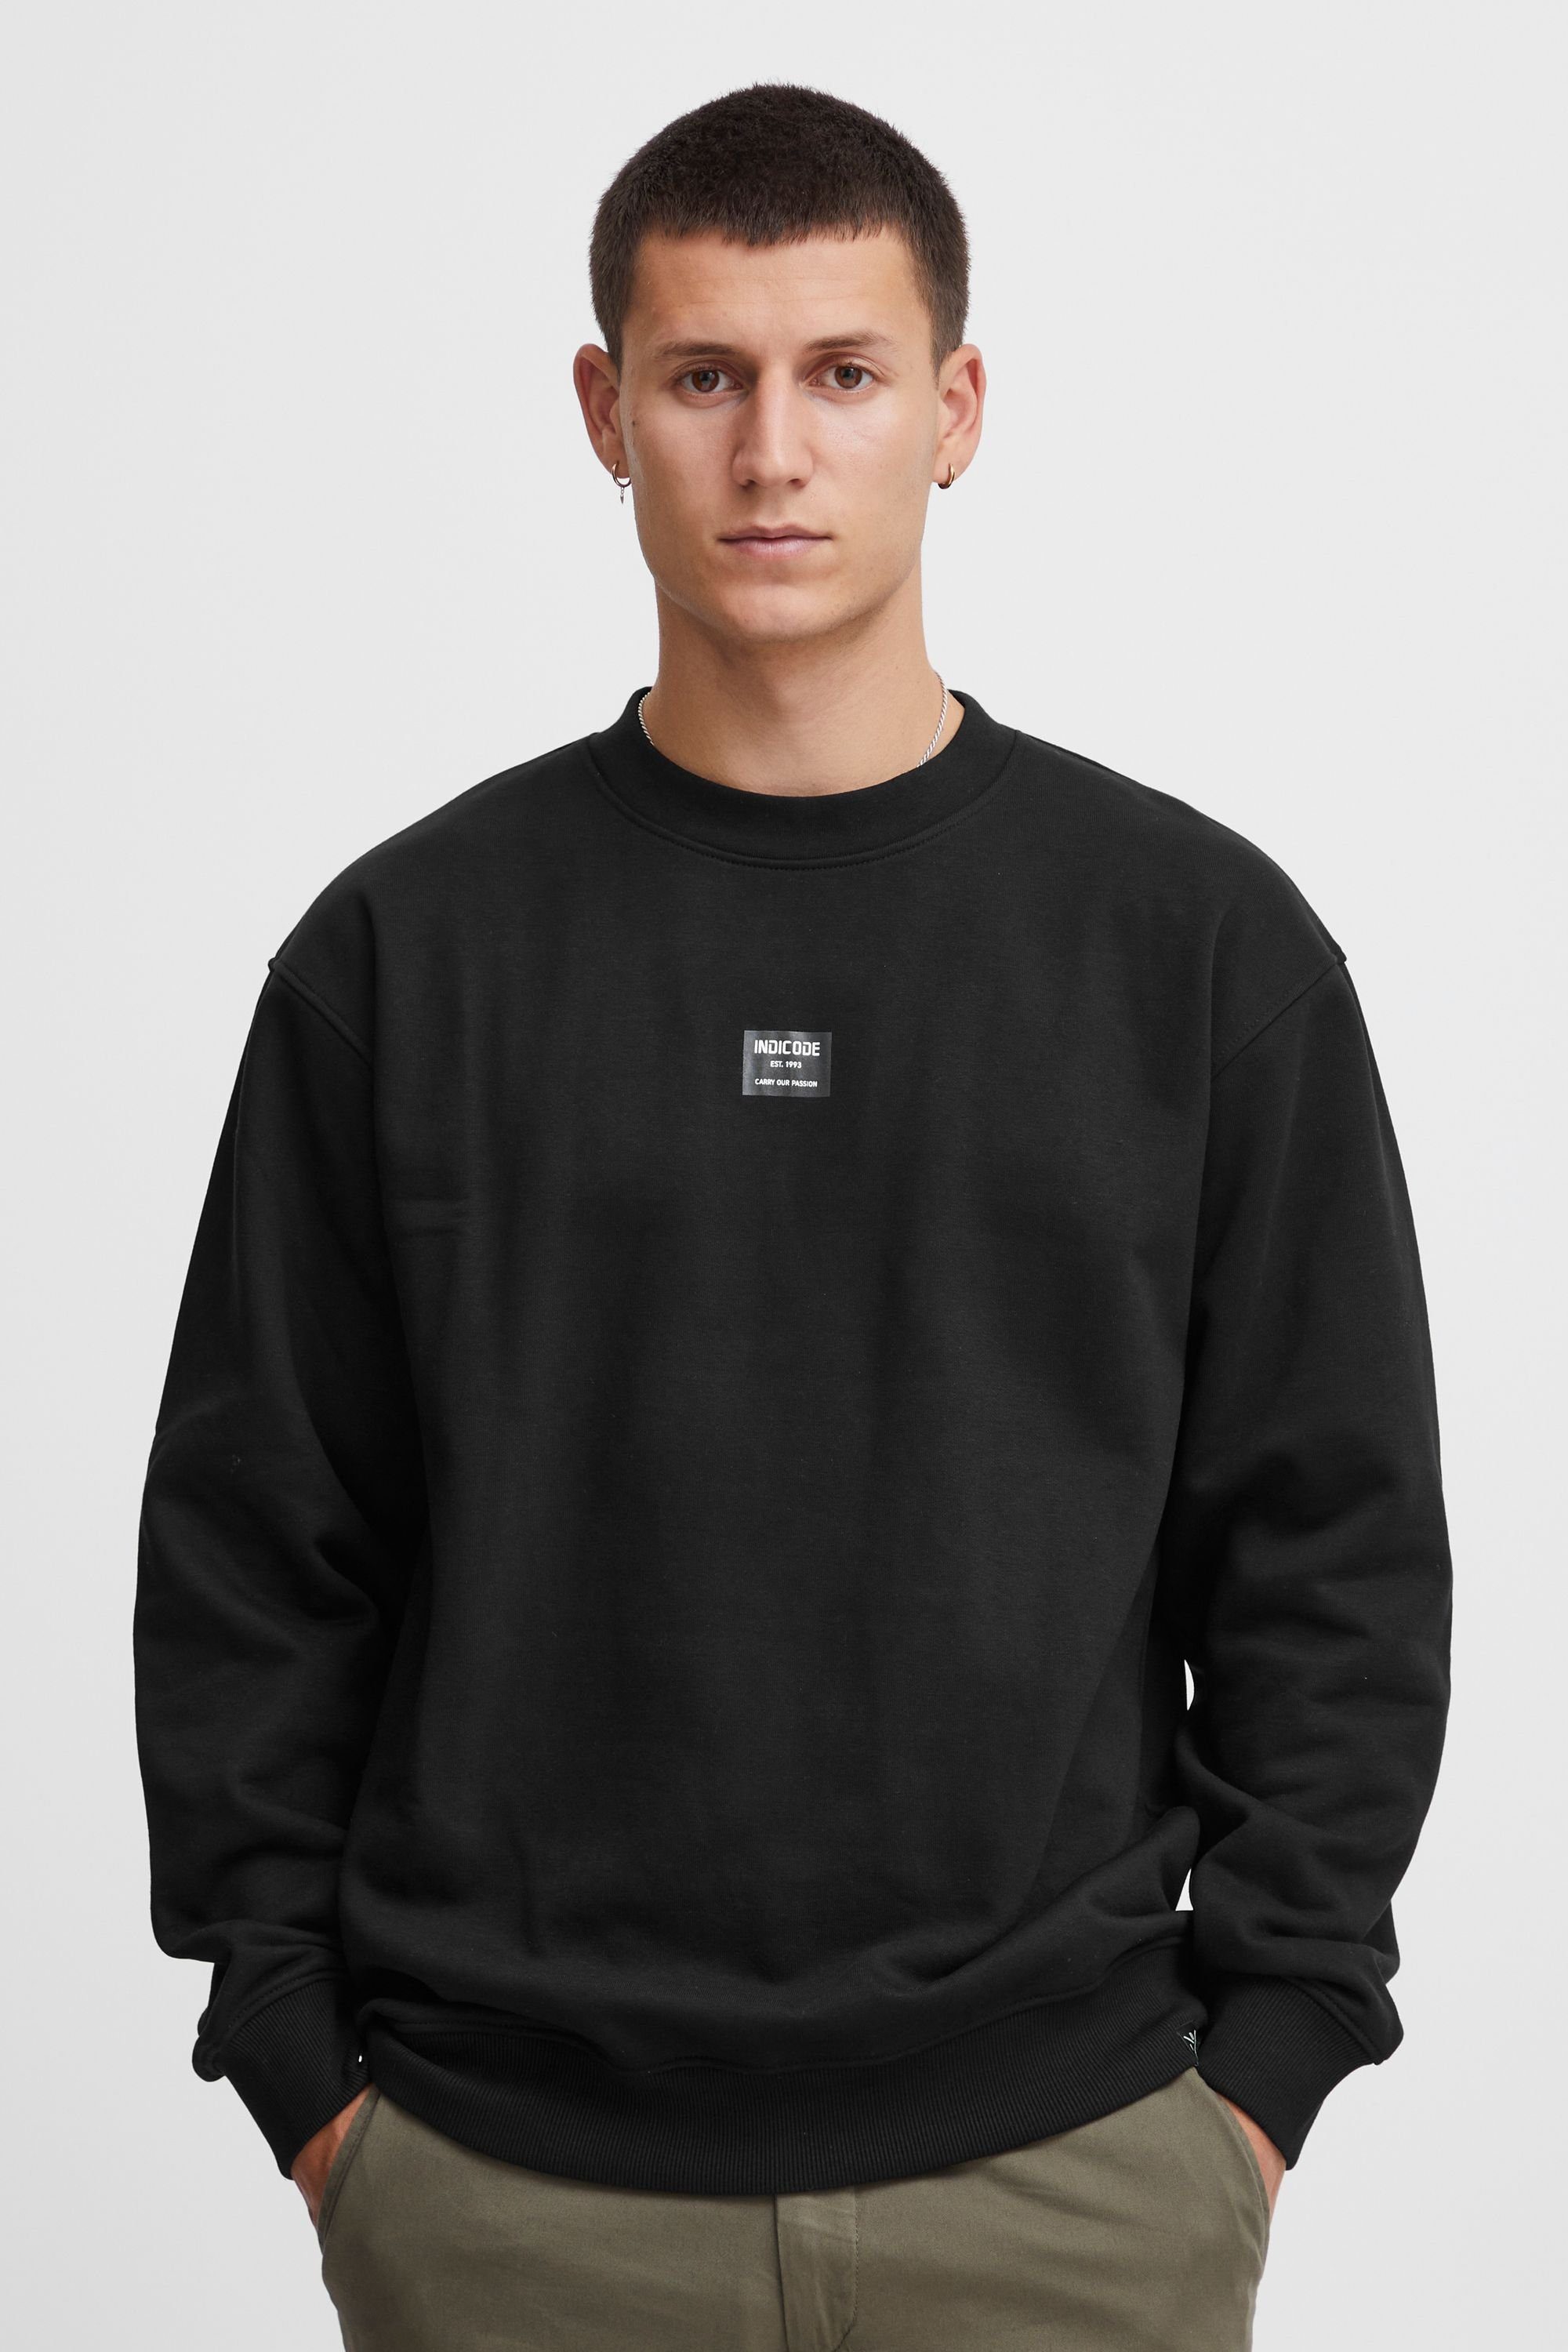 Indicode Sweatshirt Black (999)